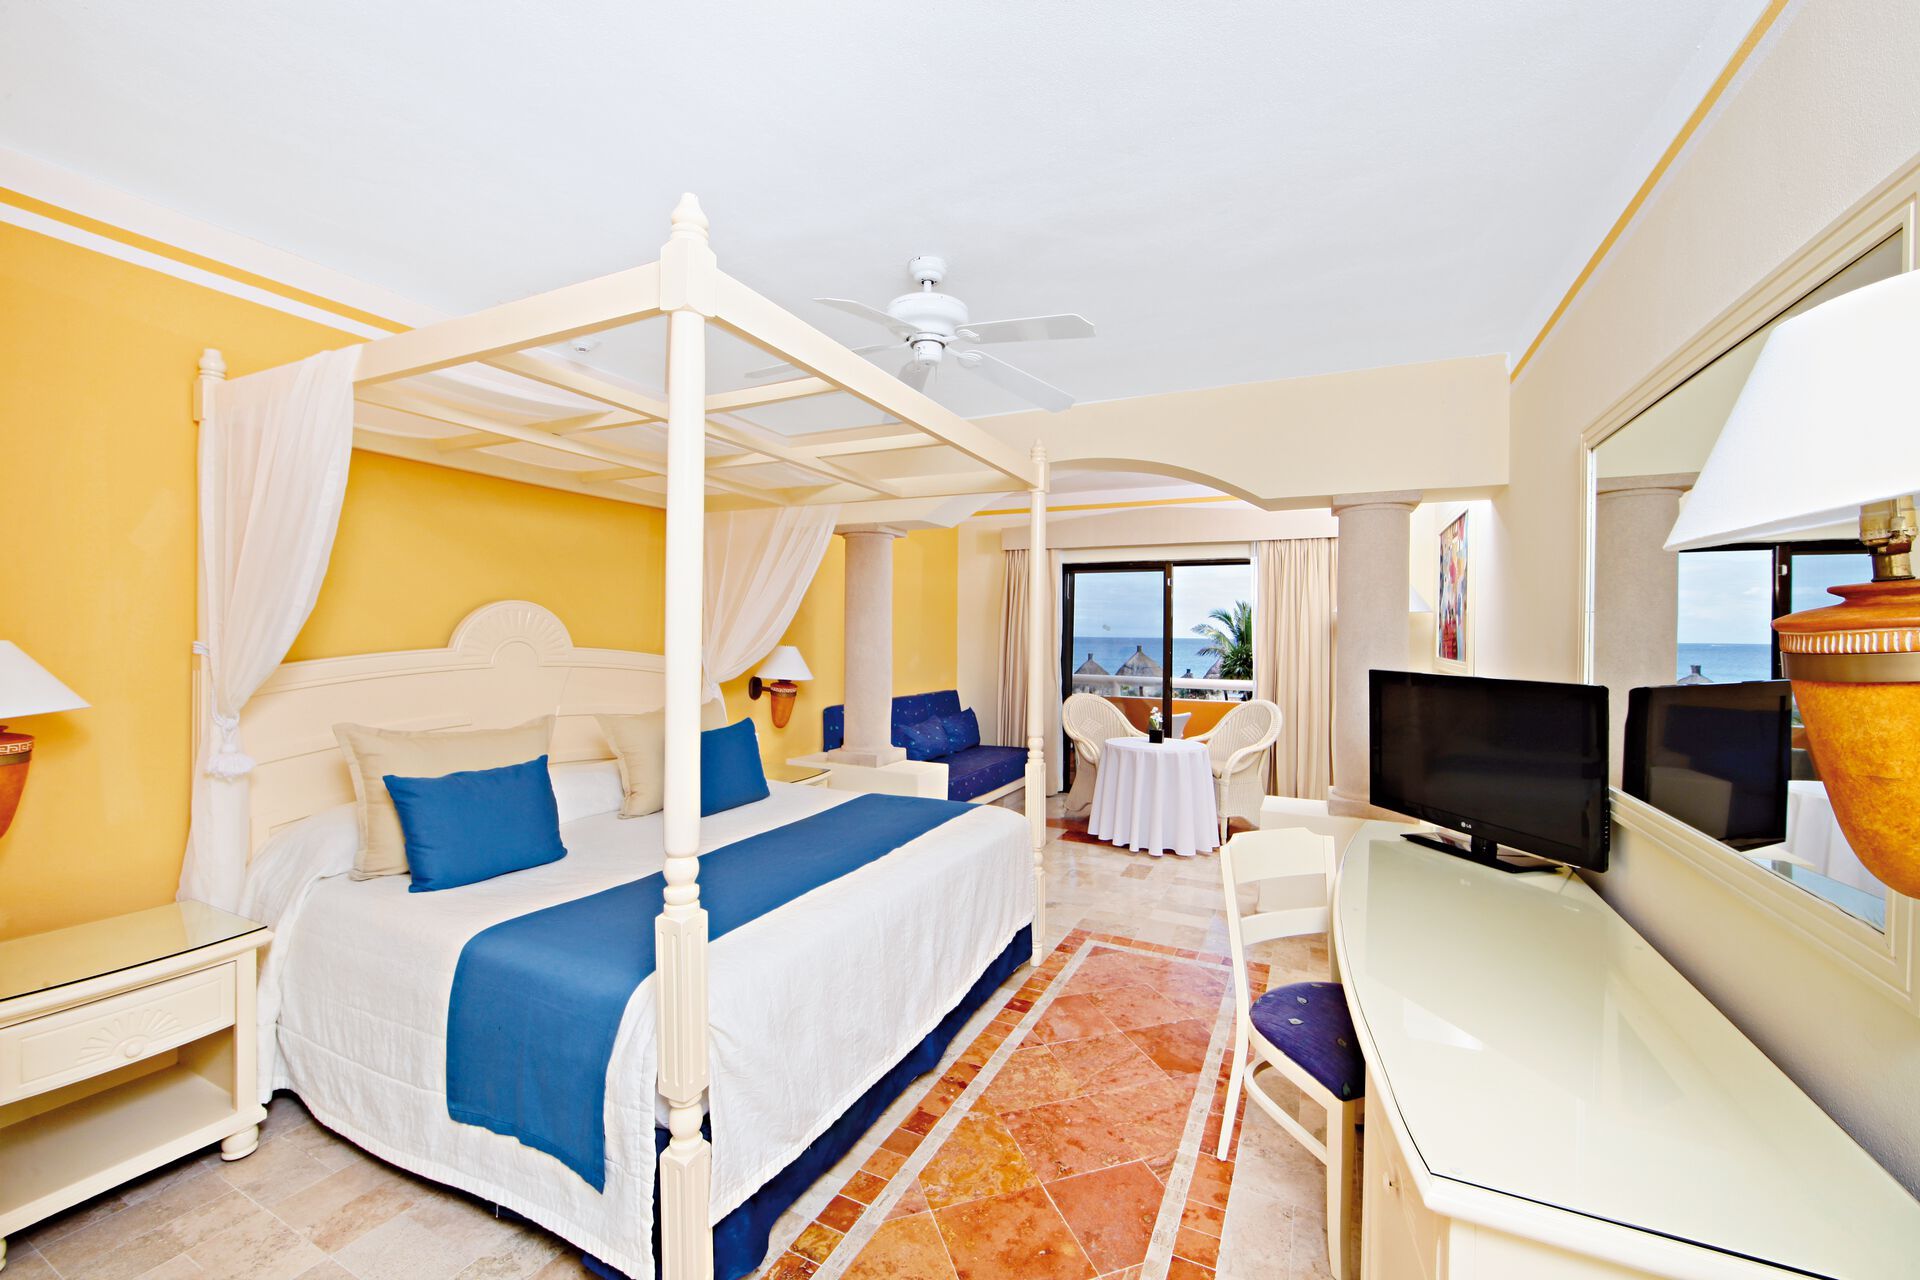 Mexique - Riviera Maya - Akumal - Hôtel Bahia Principe Luxury Akumal 5*